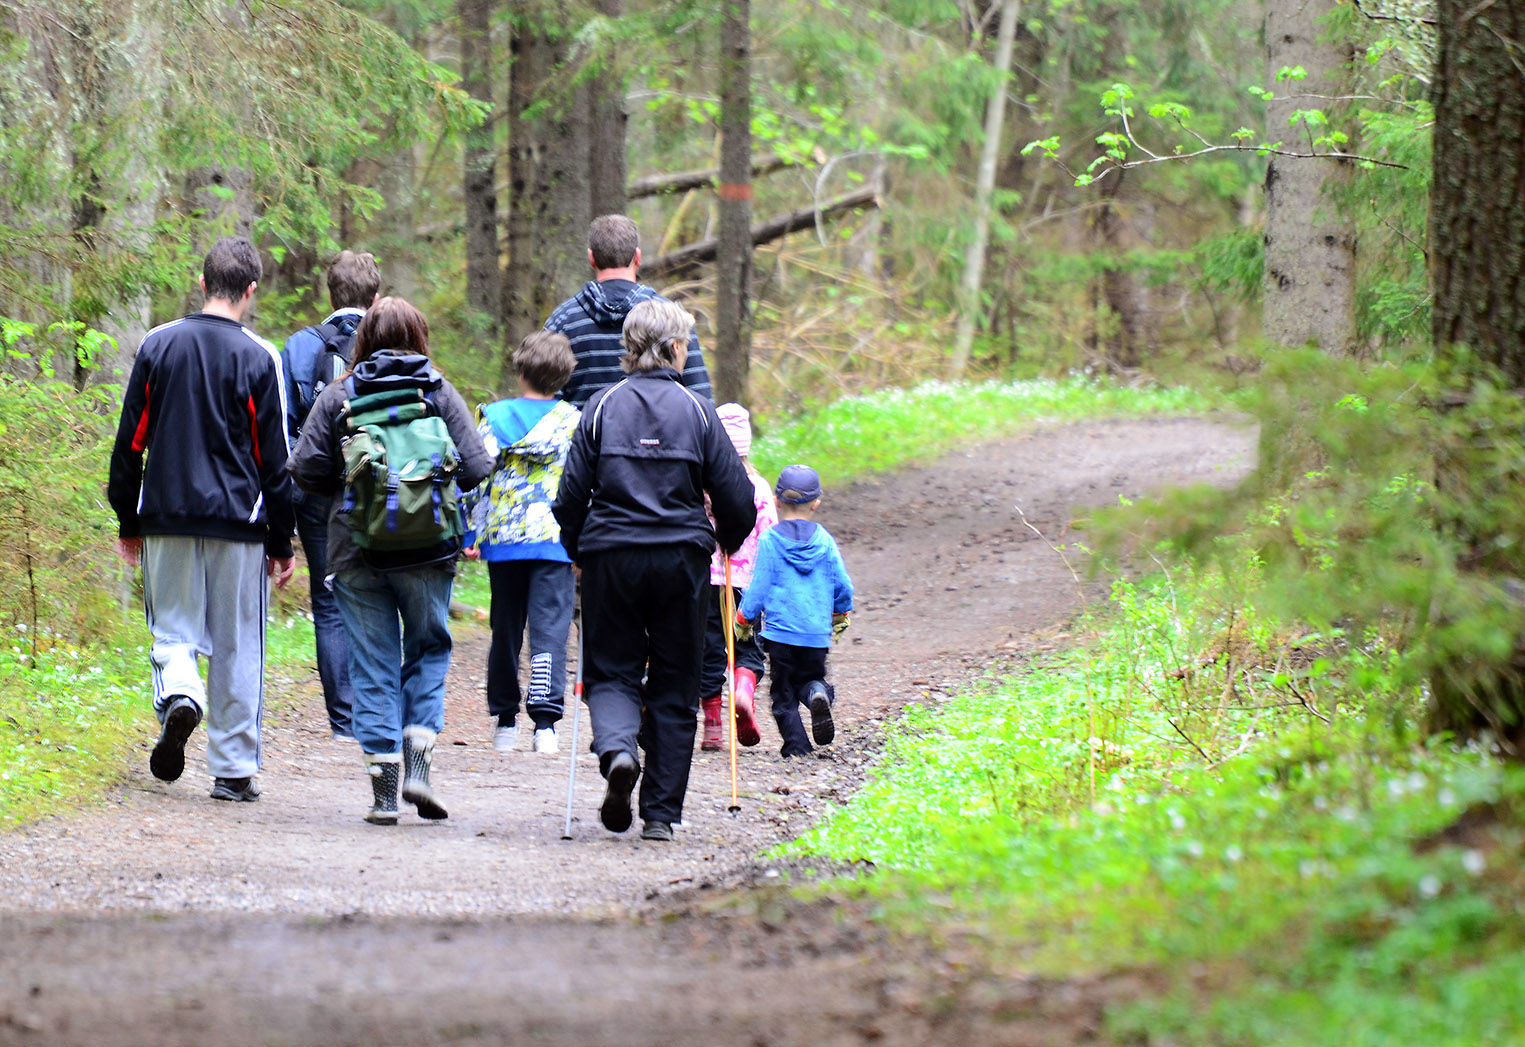 Föreställer en grupp vuxna och barn som är ute och går på en vandringsled i skogen.